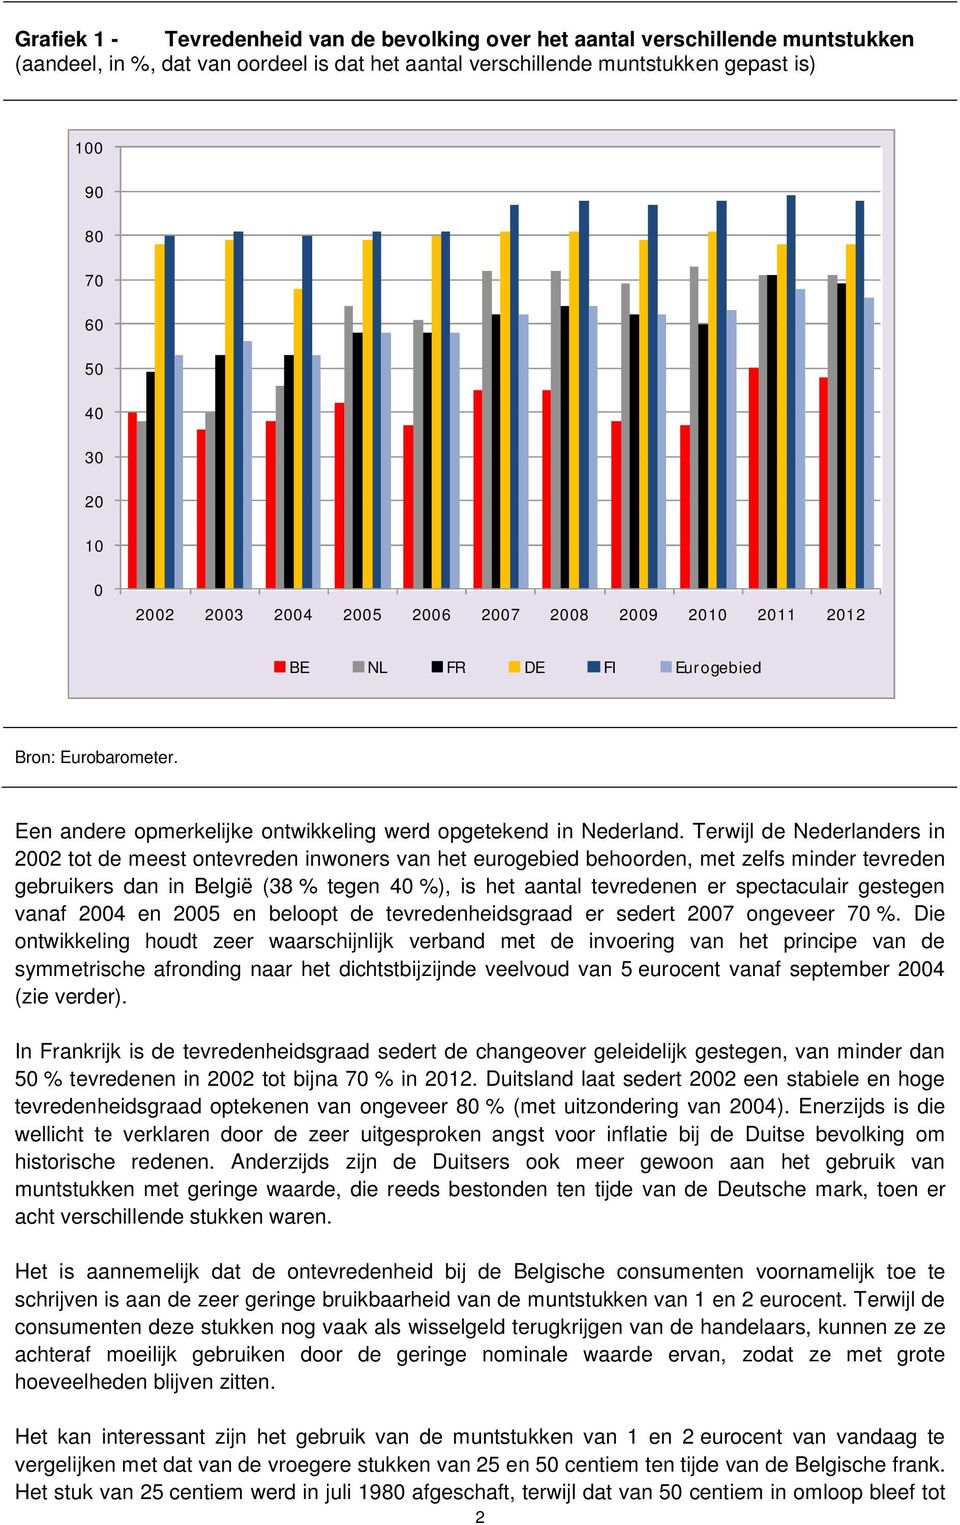 Terwijl de Nederlanders in 2002 tot de meest ontevreden inwoners van het eurogebied behoorden, met zelfs minder tevreden gebruikers dan in België (38 % tegen 40 %), is het aantal tevredenen er